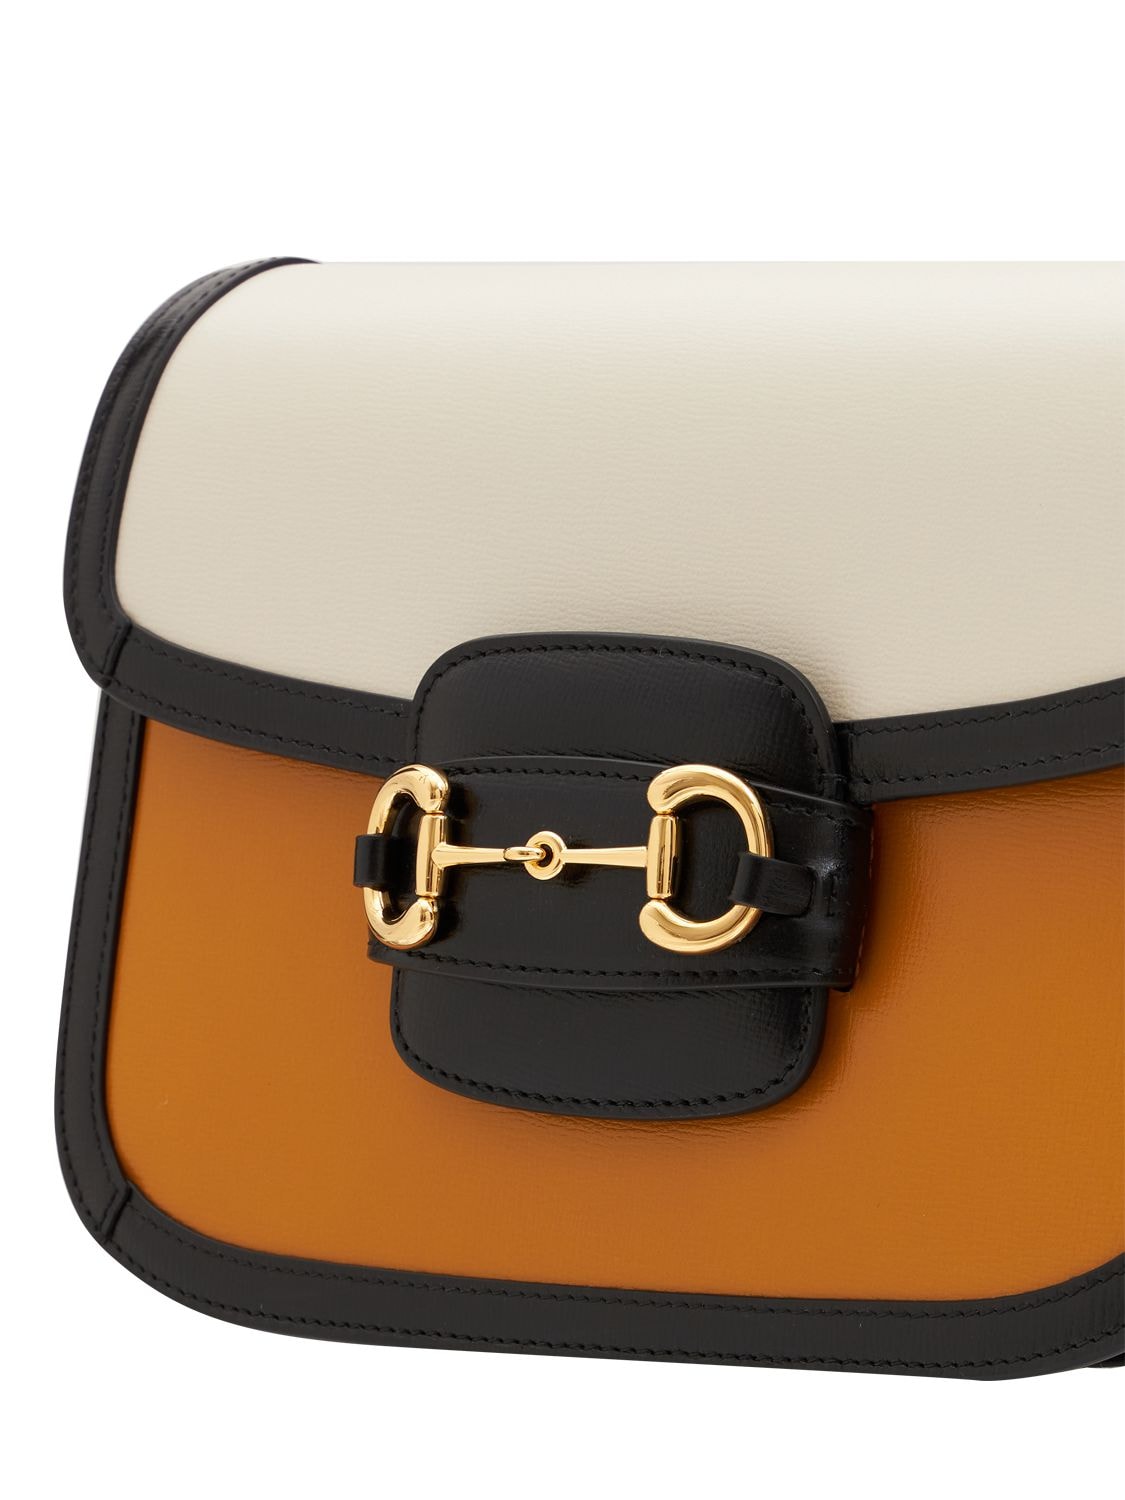 GUCCI 1955 Horsebit Shoulder Bag in Orange & White [ReSale]